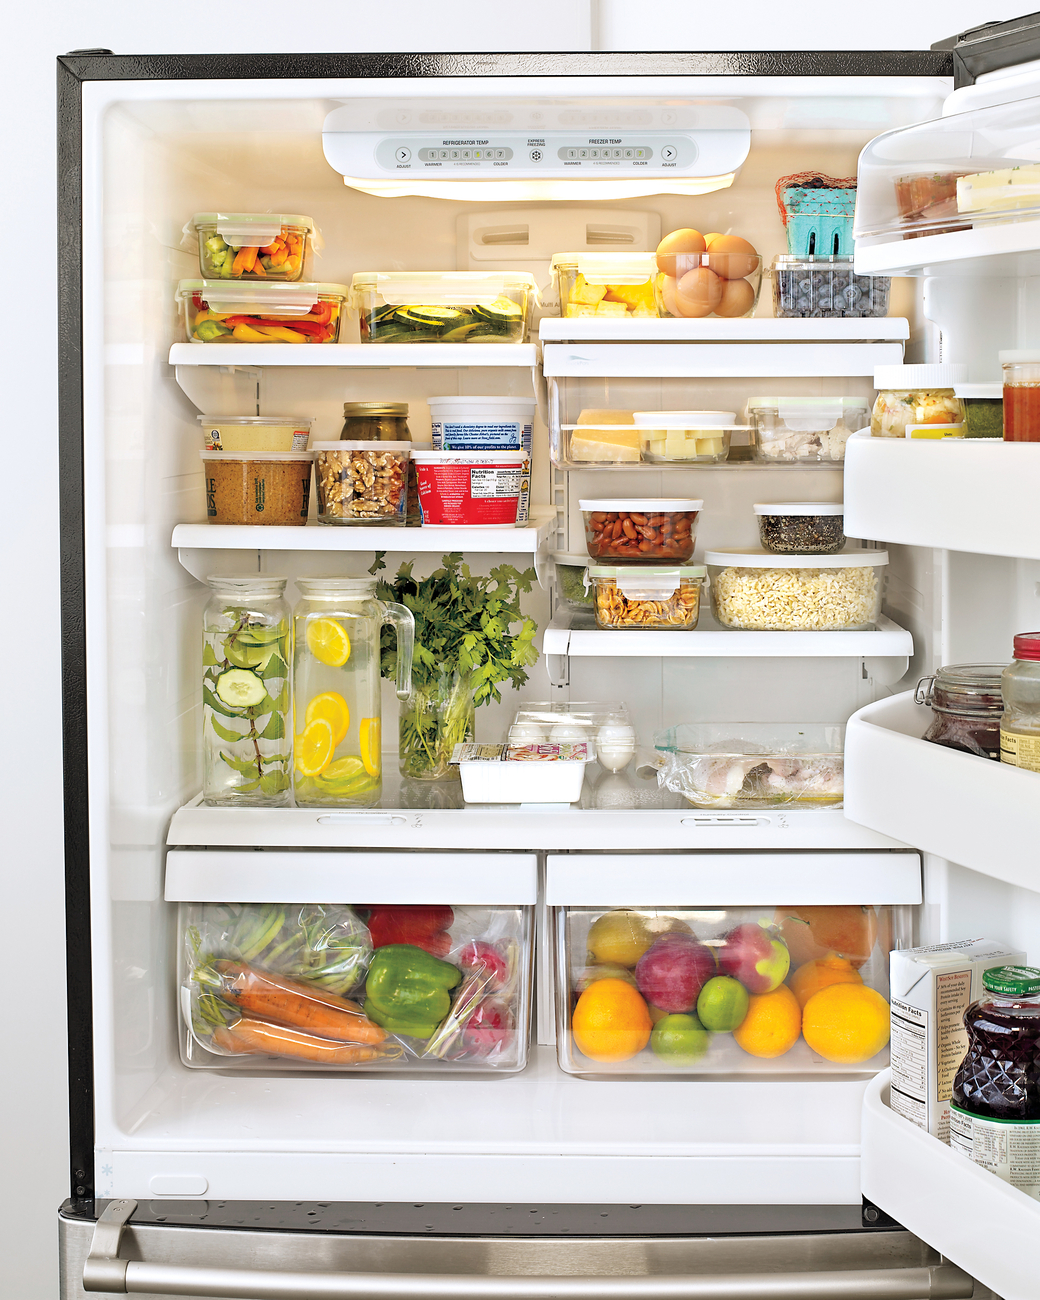 21. Những thực phẩm không nên bảo quản trong tủ lạnh6